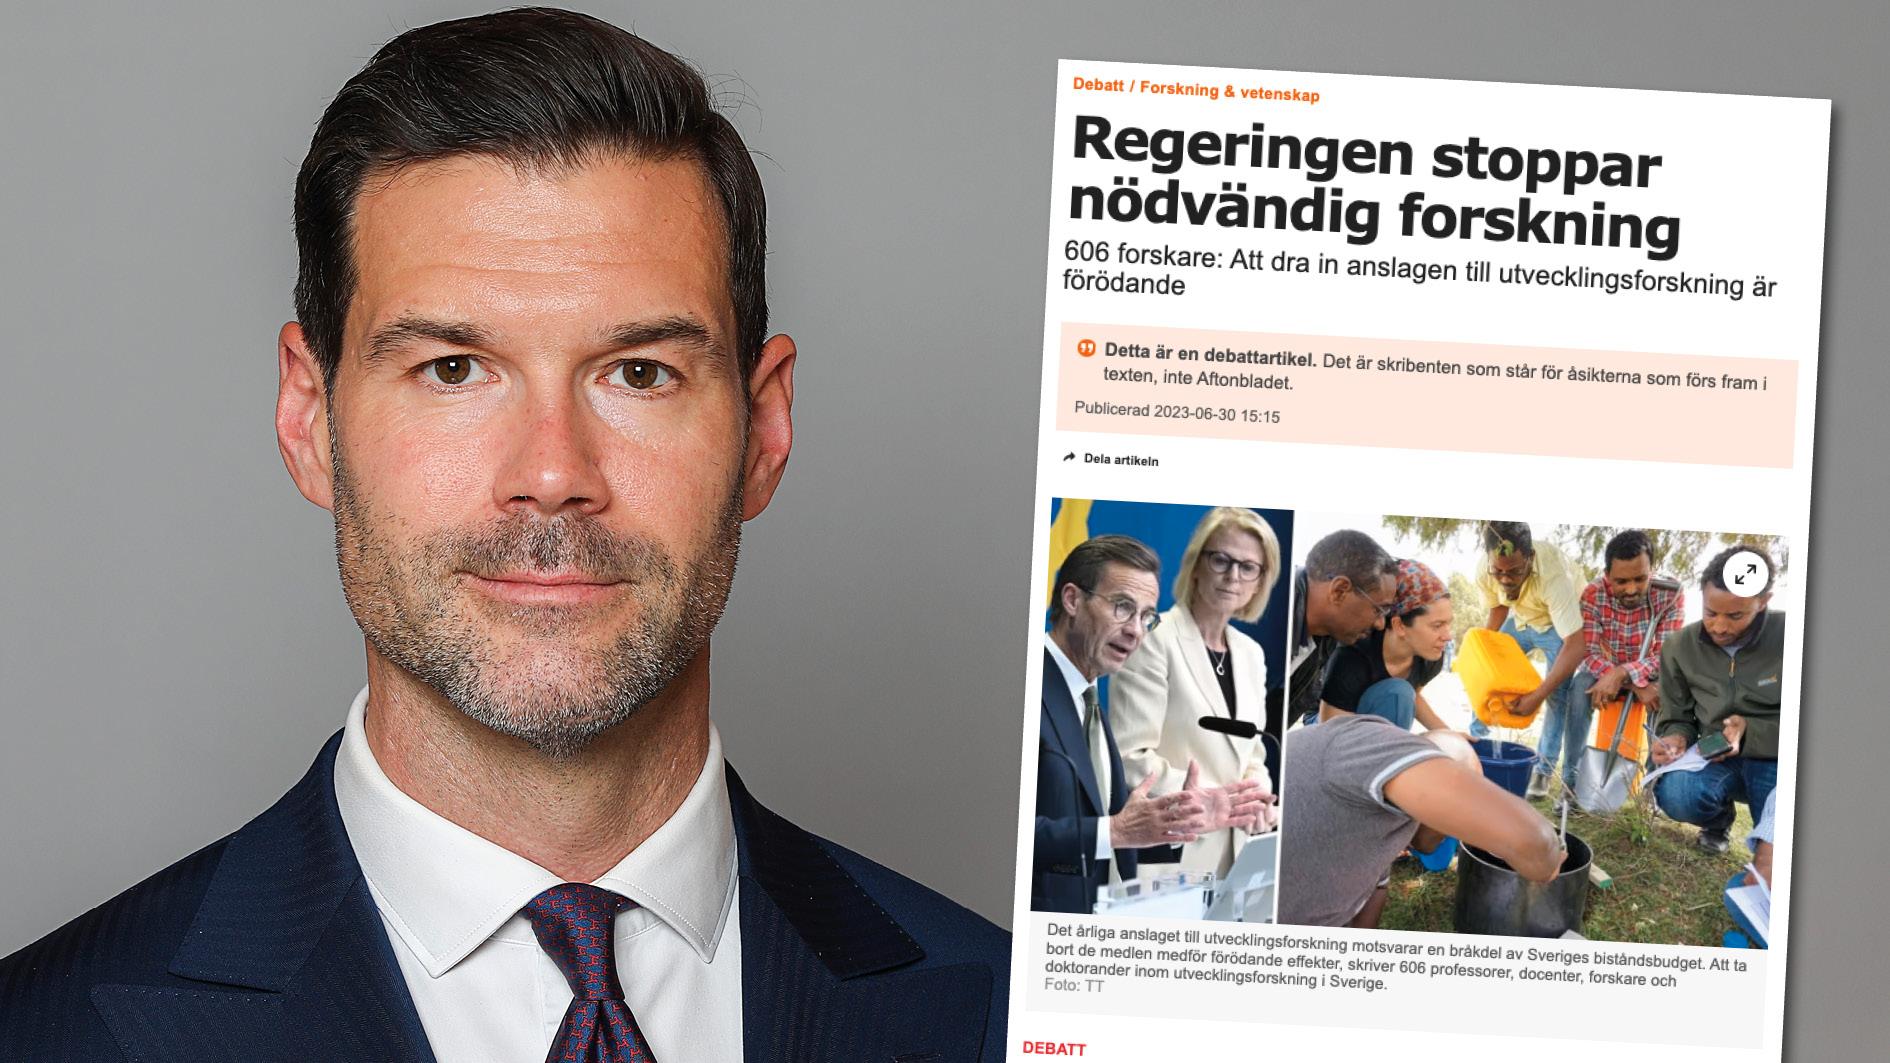  Jag förstår att forskare känner besvikelse. Jag är dock trygg i min bedömning att svenska biståndspengar gör större skillnad i mottagarländer, än här hemma i Sverige. Replik från biståndsminister Johan Forssell.